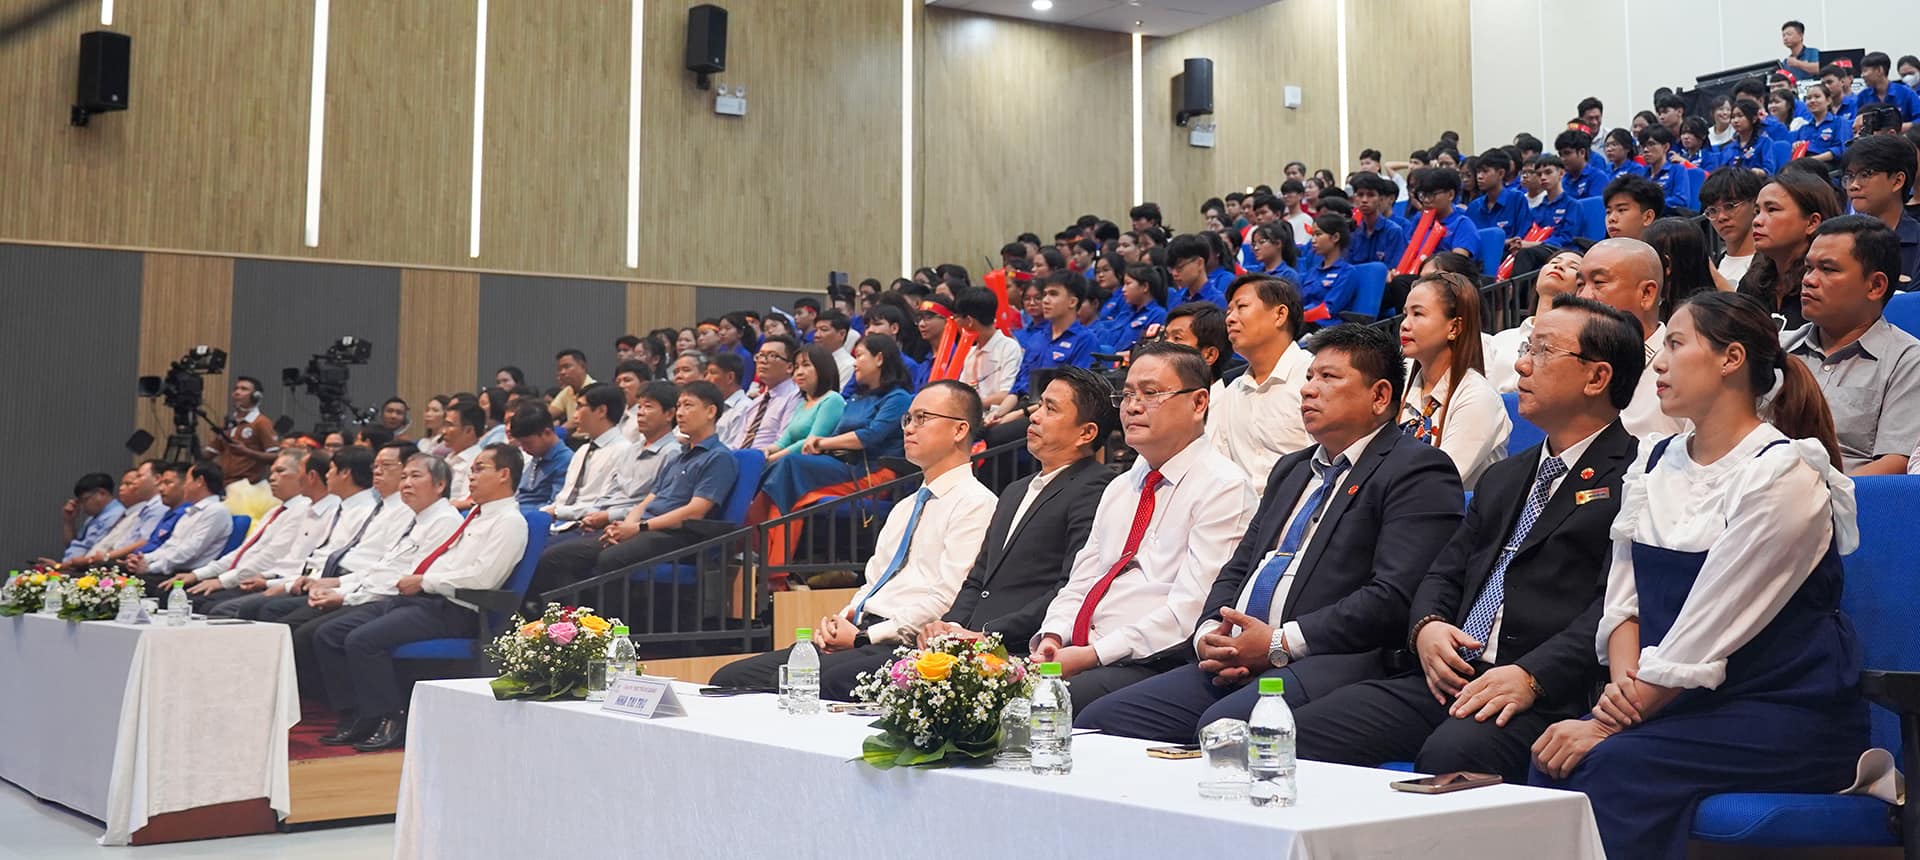 Đại diện THACO, ông Đoàn Đạt Ninh - Phó Tổng Giám đốc THACO AUTO phụ trách Khối Sản xuất tham dự chương trình